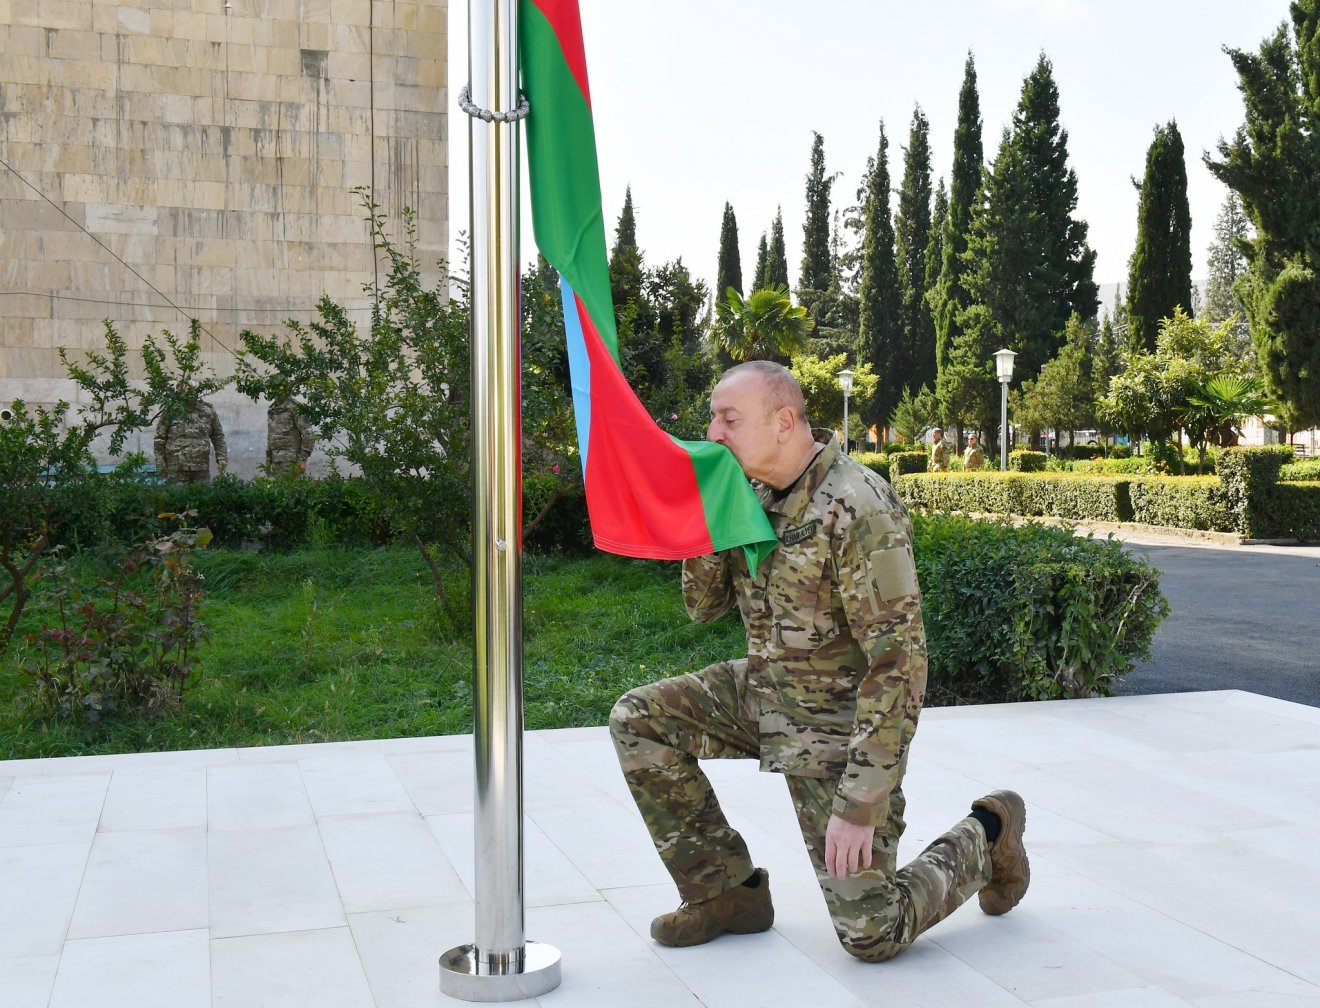 Felvonta az azeri zászlót Aliyev Hegyi-Karabahban, ahonnan elmenekültek az örmények